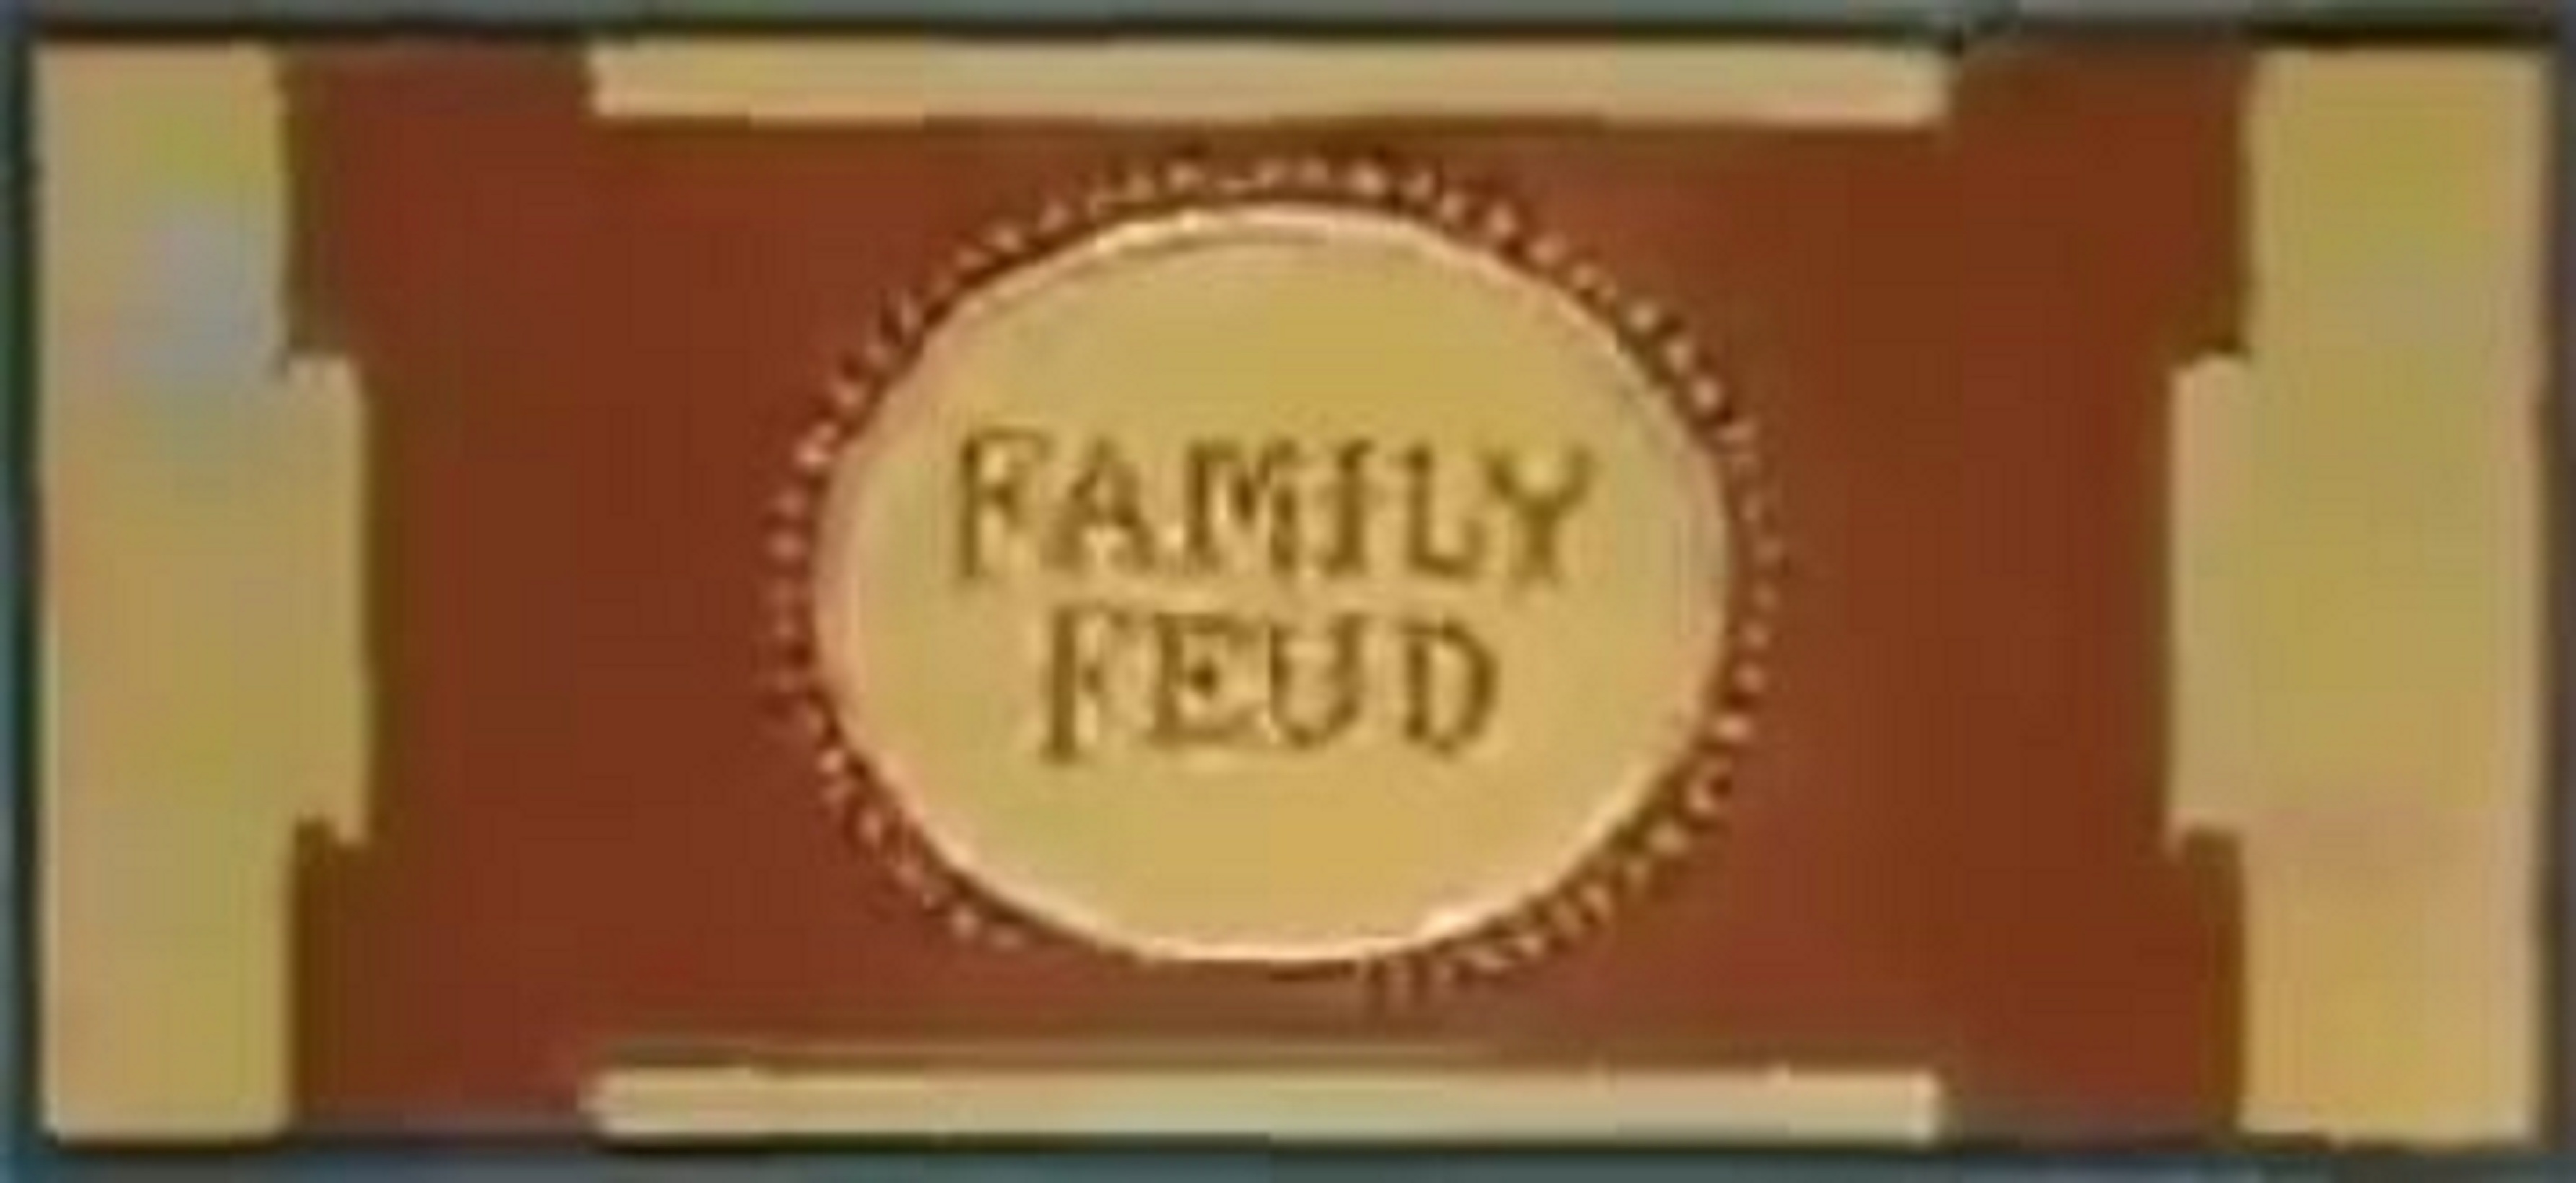 family feud logo